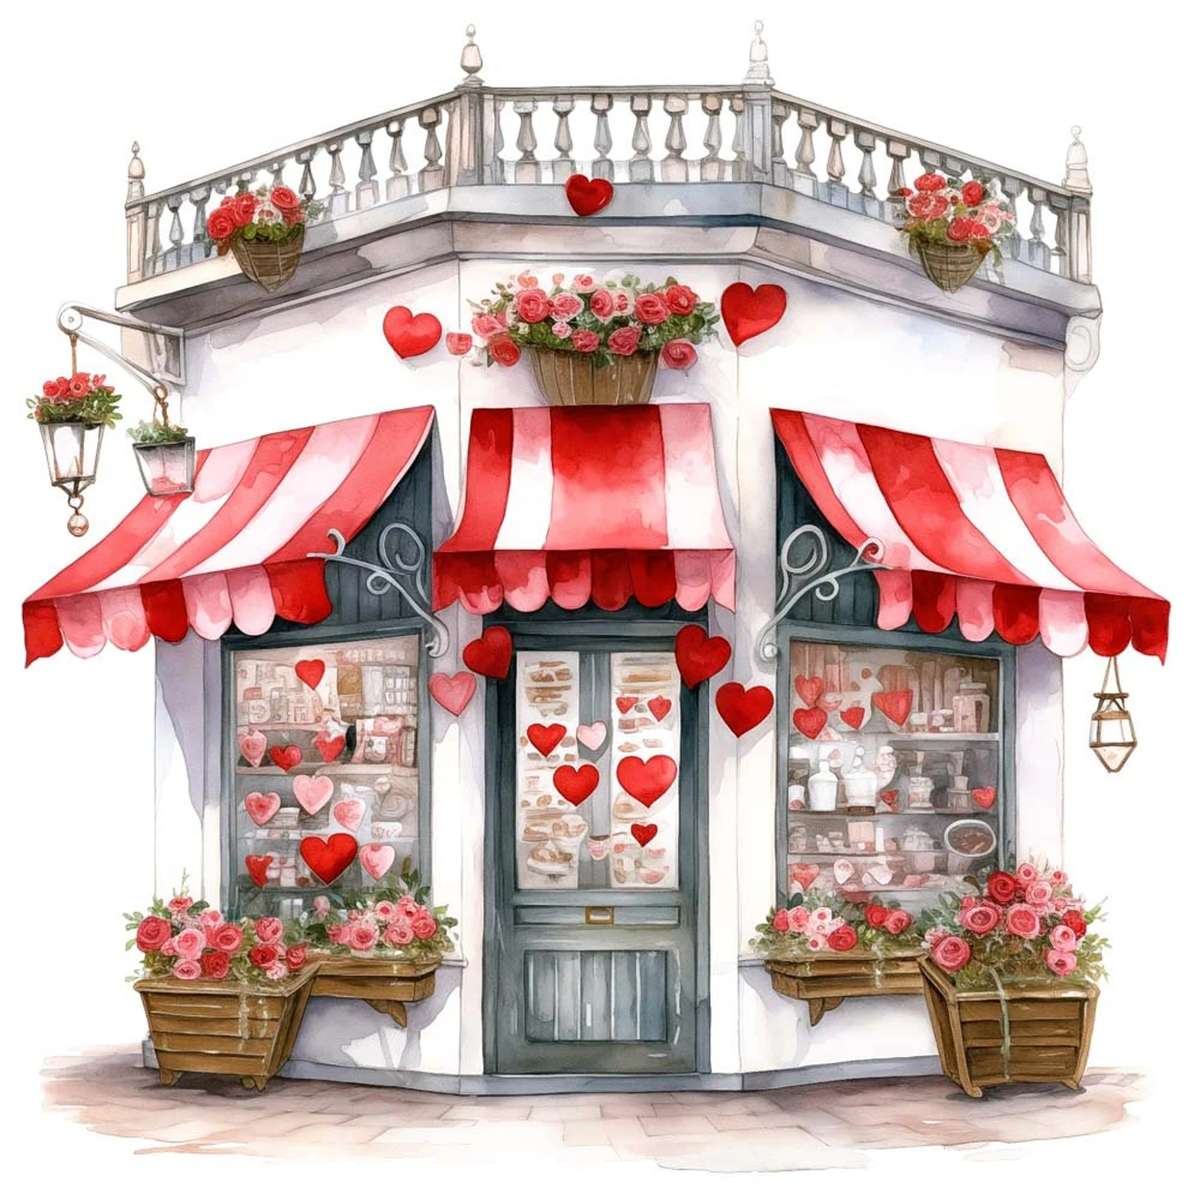 Roztomilý valentýnský obchod skládačky online